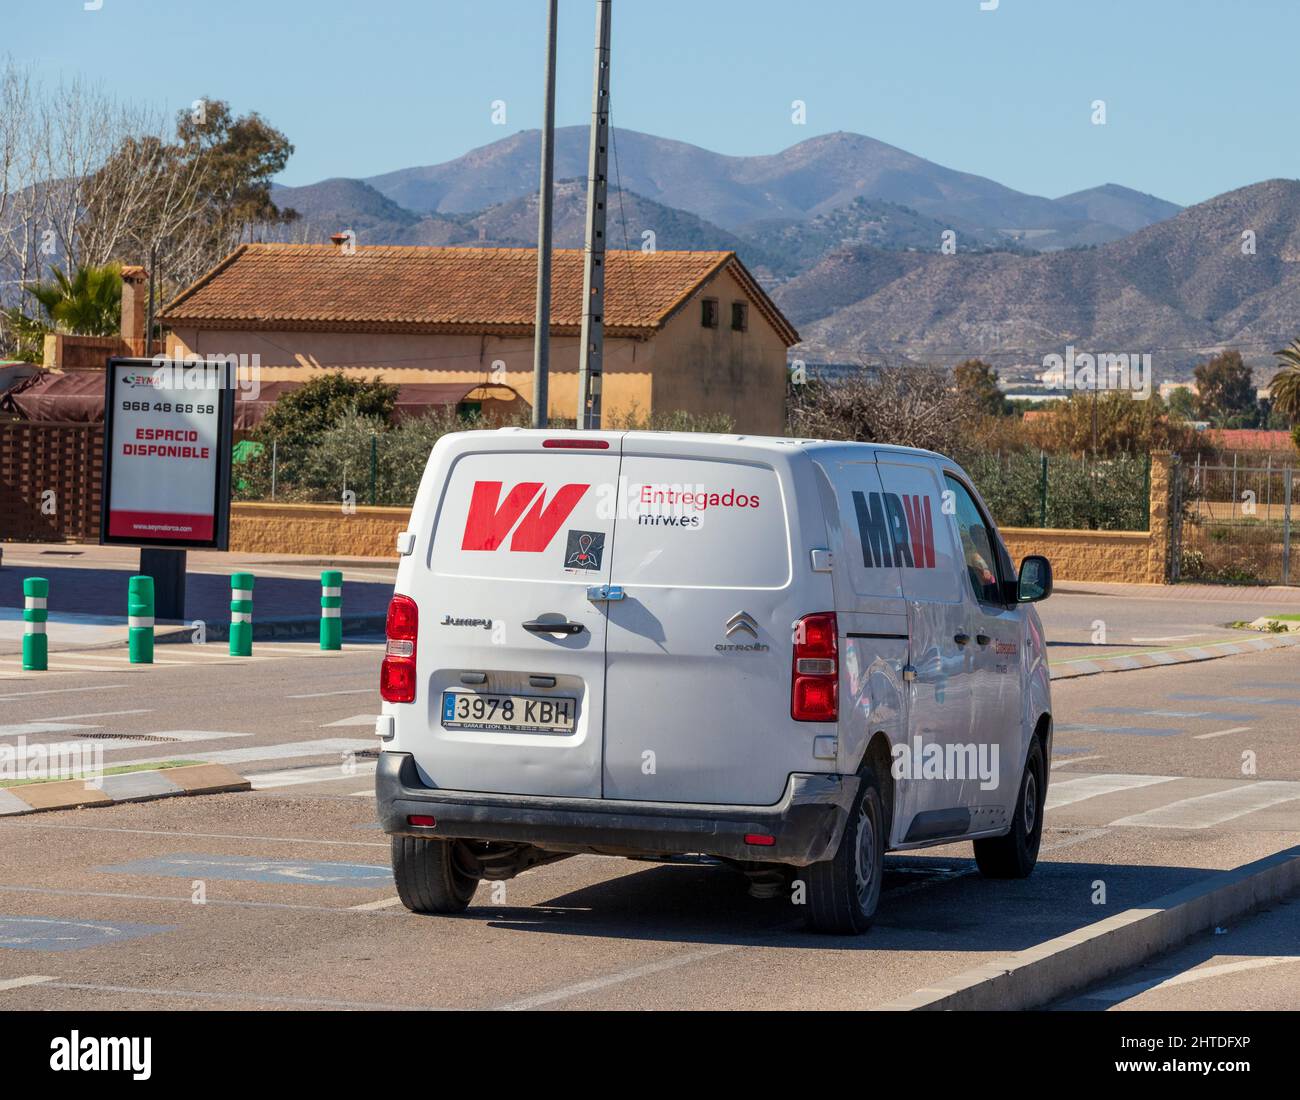 MRW Delivery Company Van, Spain Stock Photo